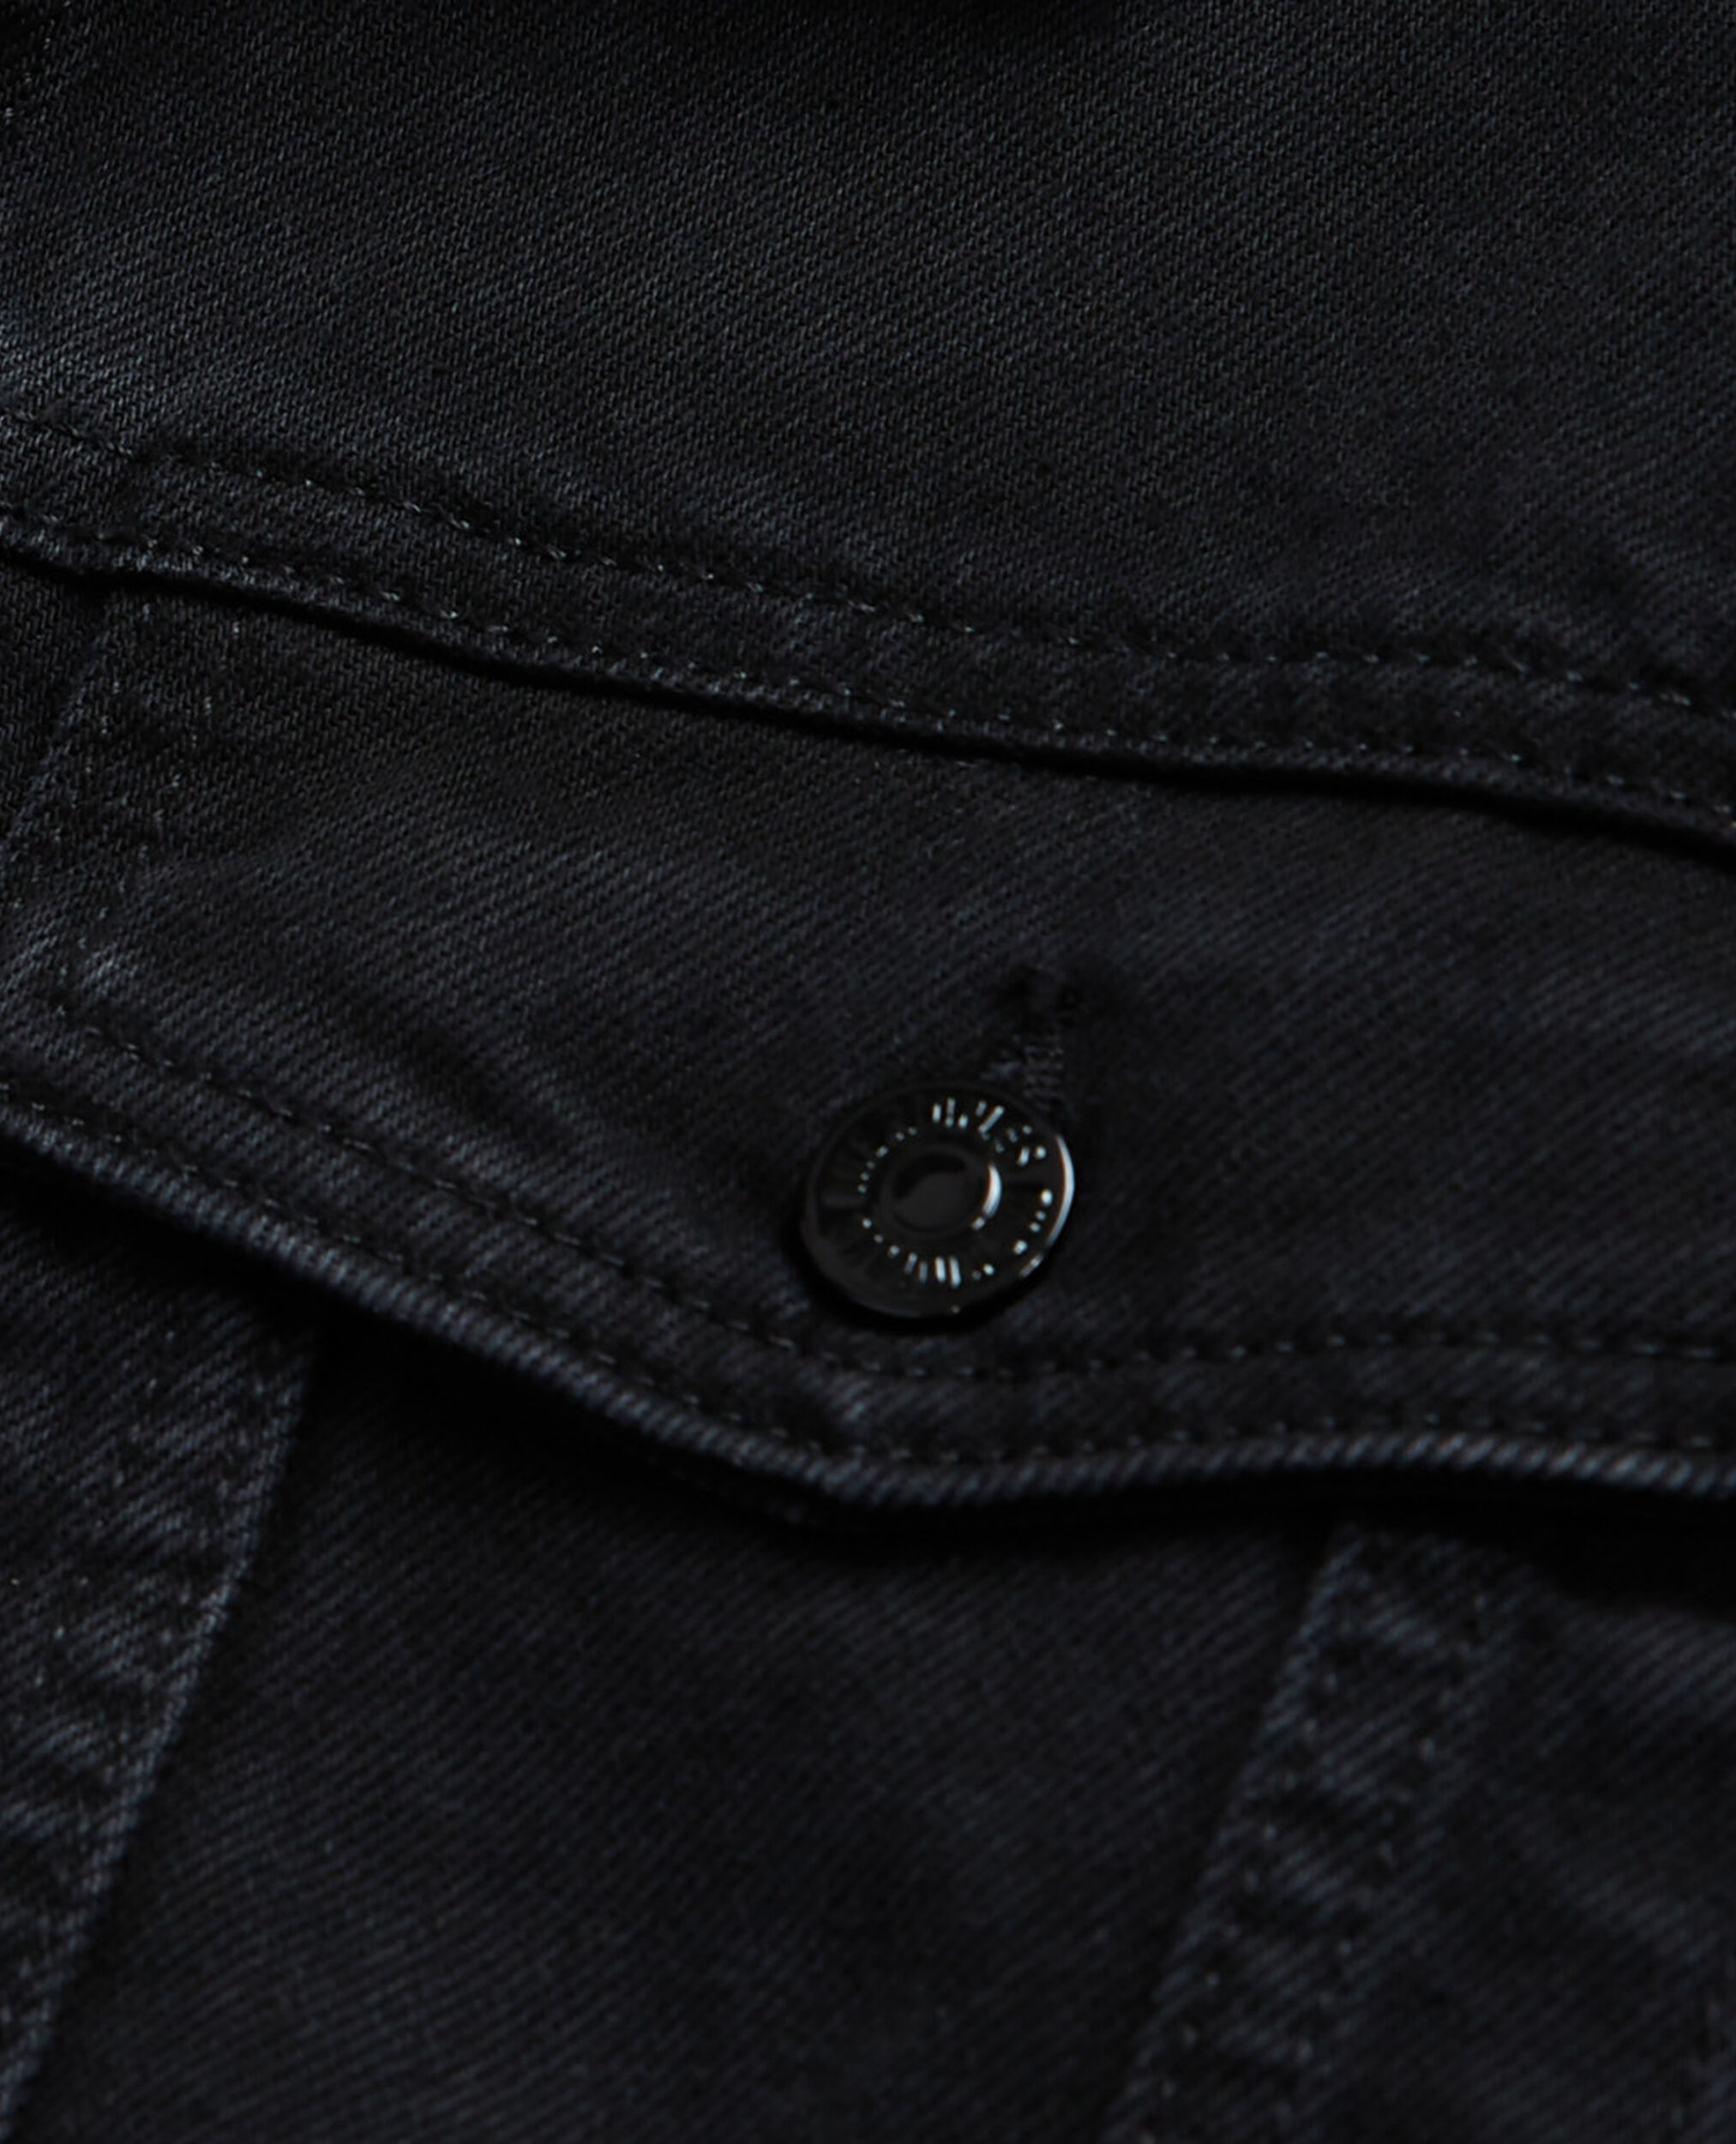 Black denim jacket, BLACK WASHED, hi-res image number null